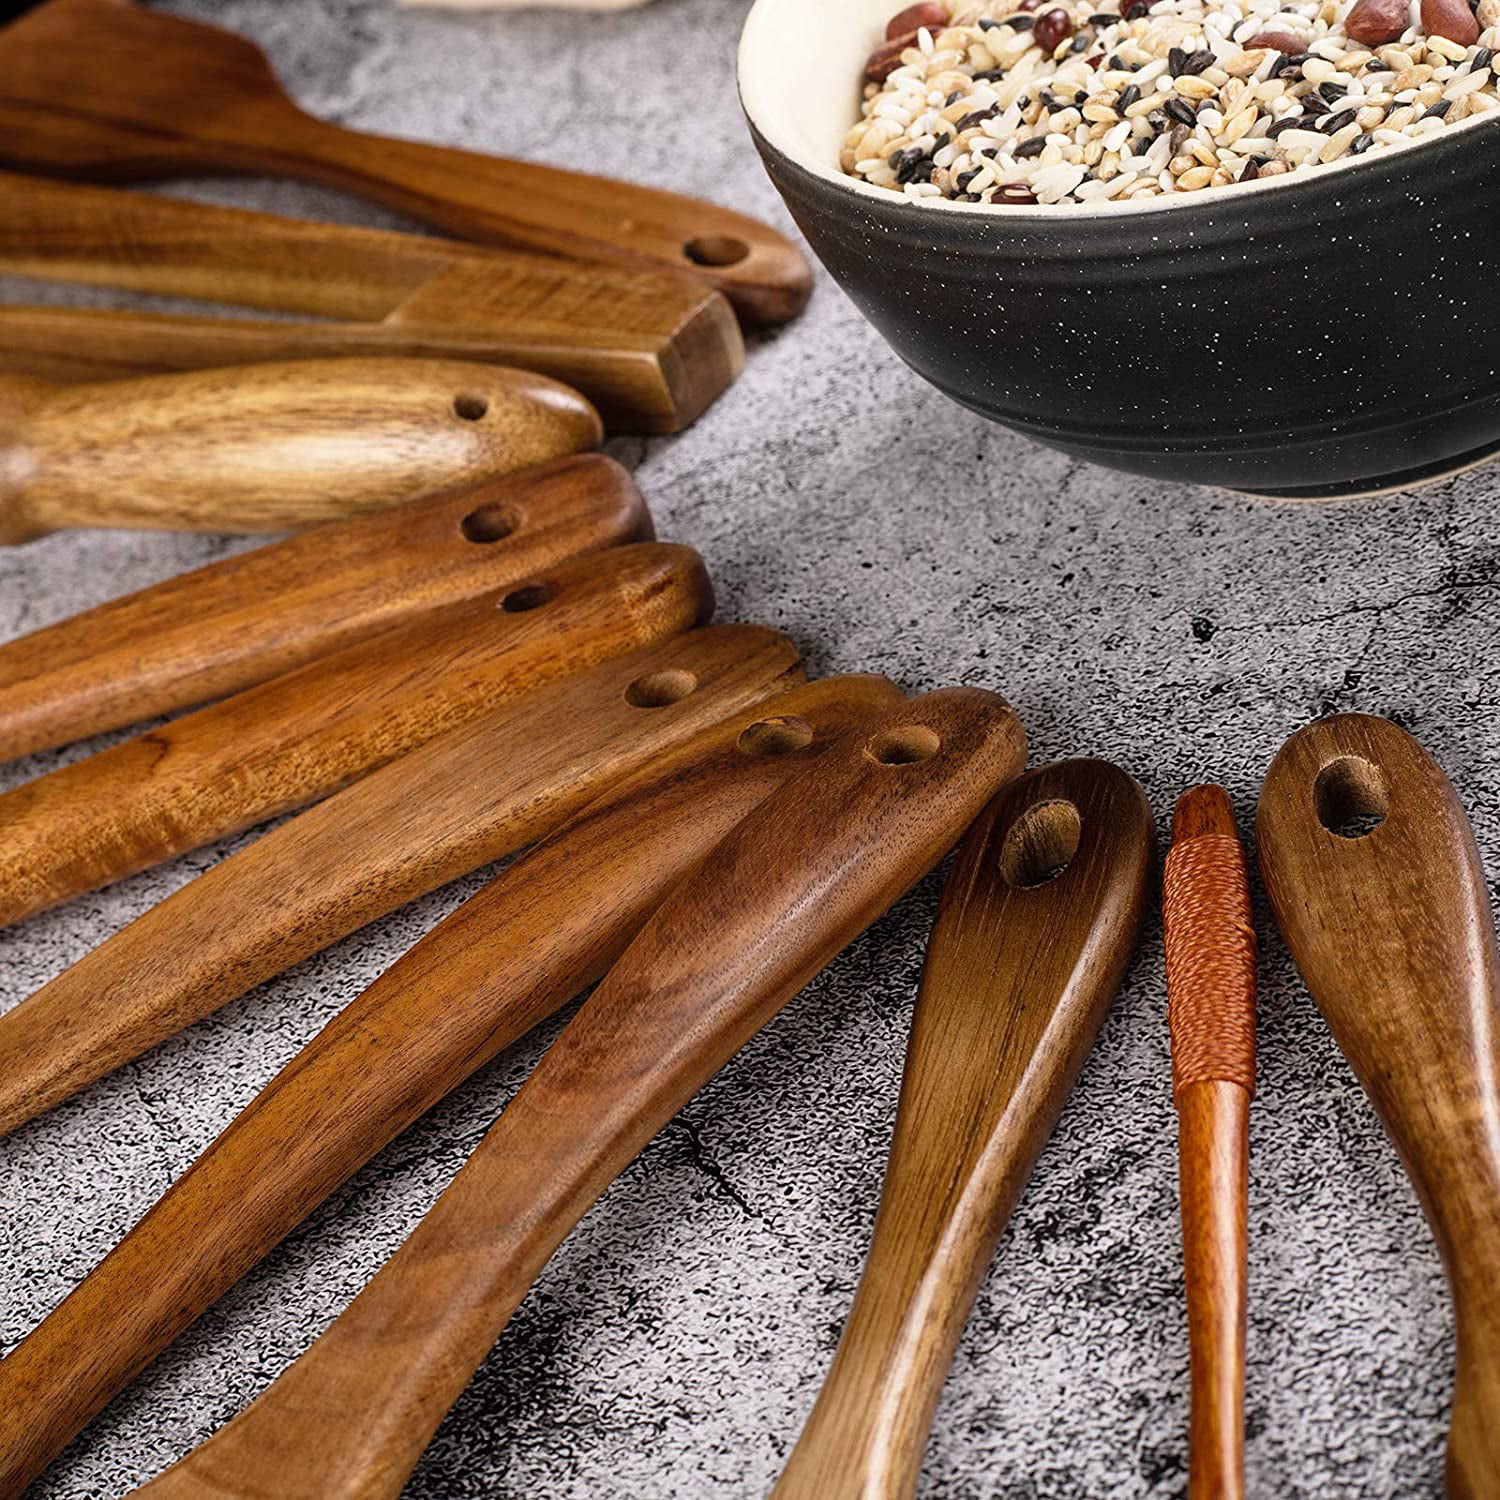 Wooden Kitchen Utensils Set, Wooden Spoons for Cooking – 8 Pcs Wood Cooking  Utenstils – Durable Teak…See more Wooden Kitchen Utensils Set, Wooden